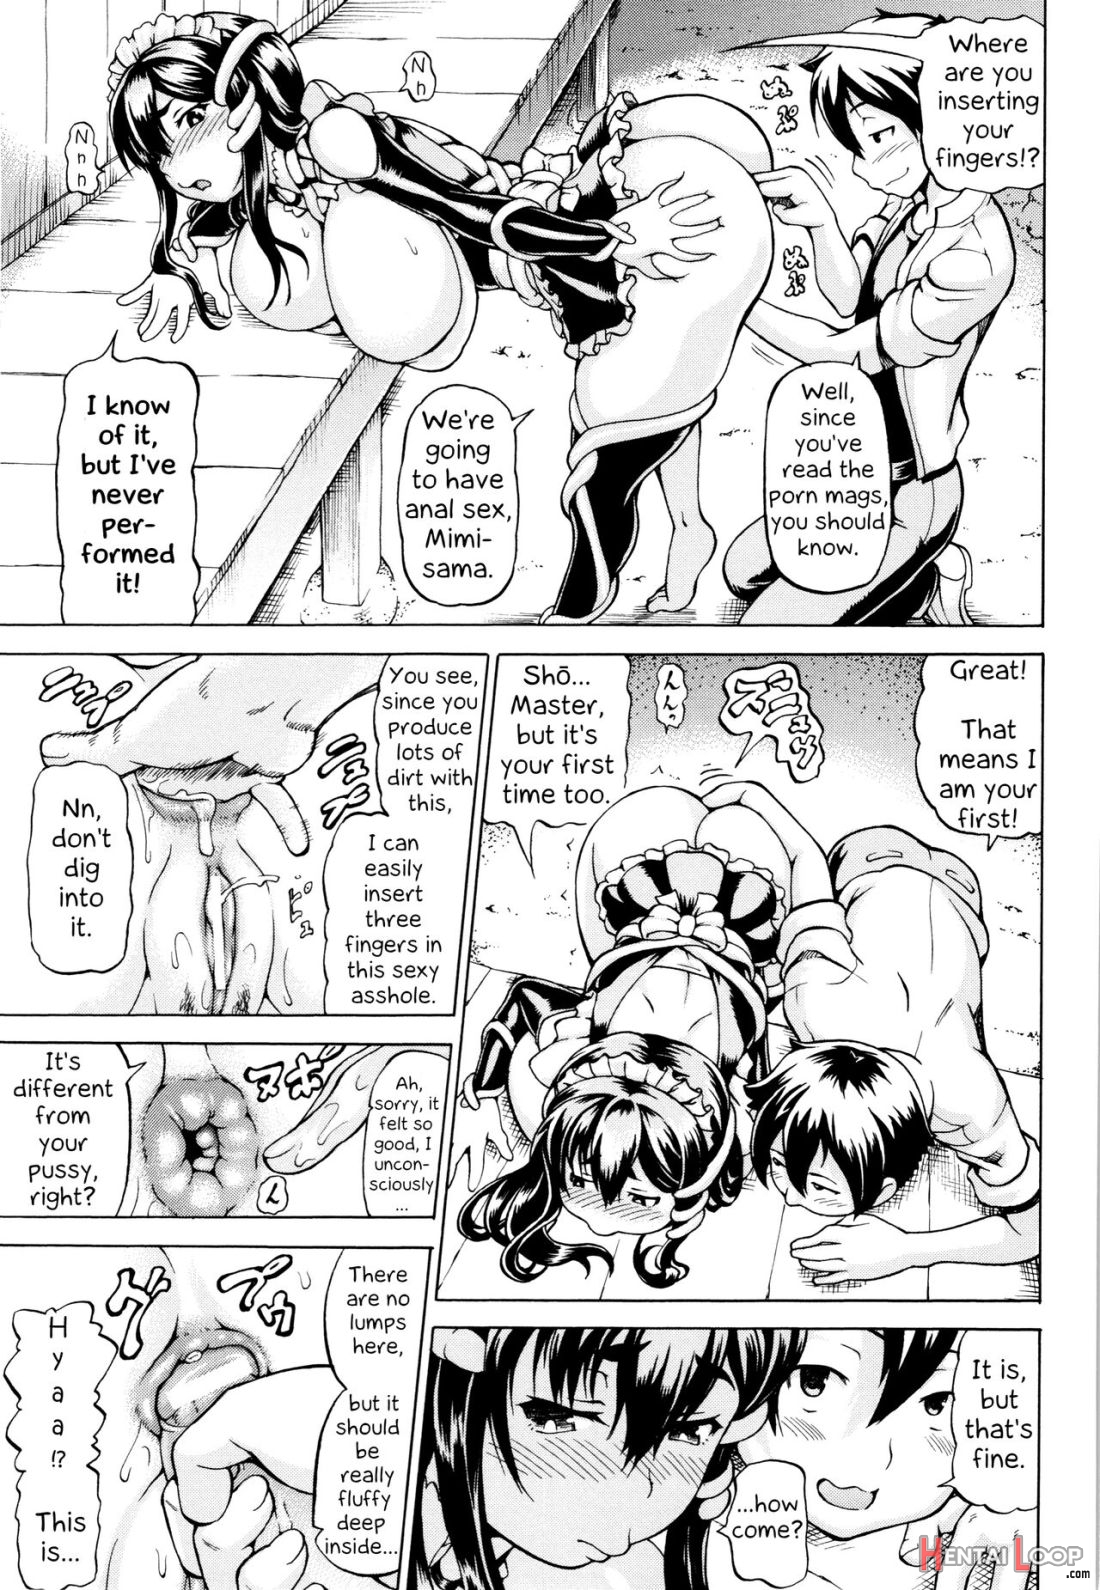 Mimi-sama Okkiku Shite! page 33